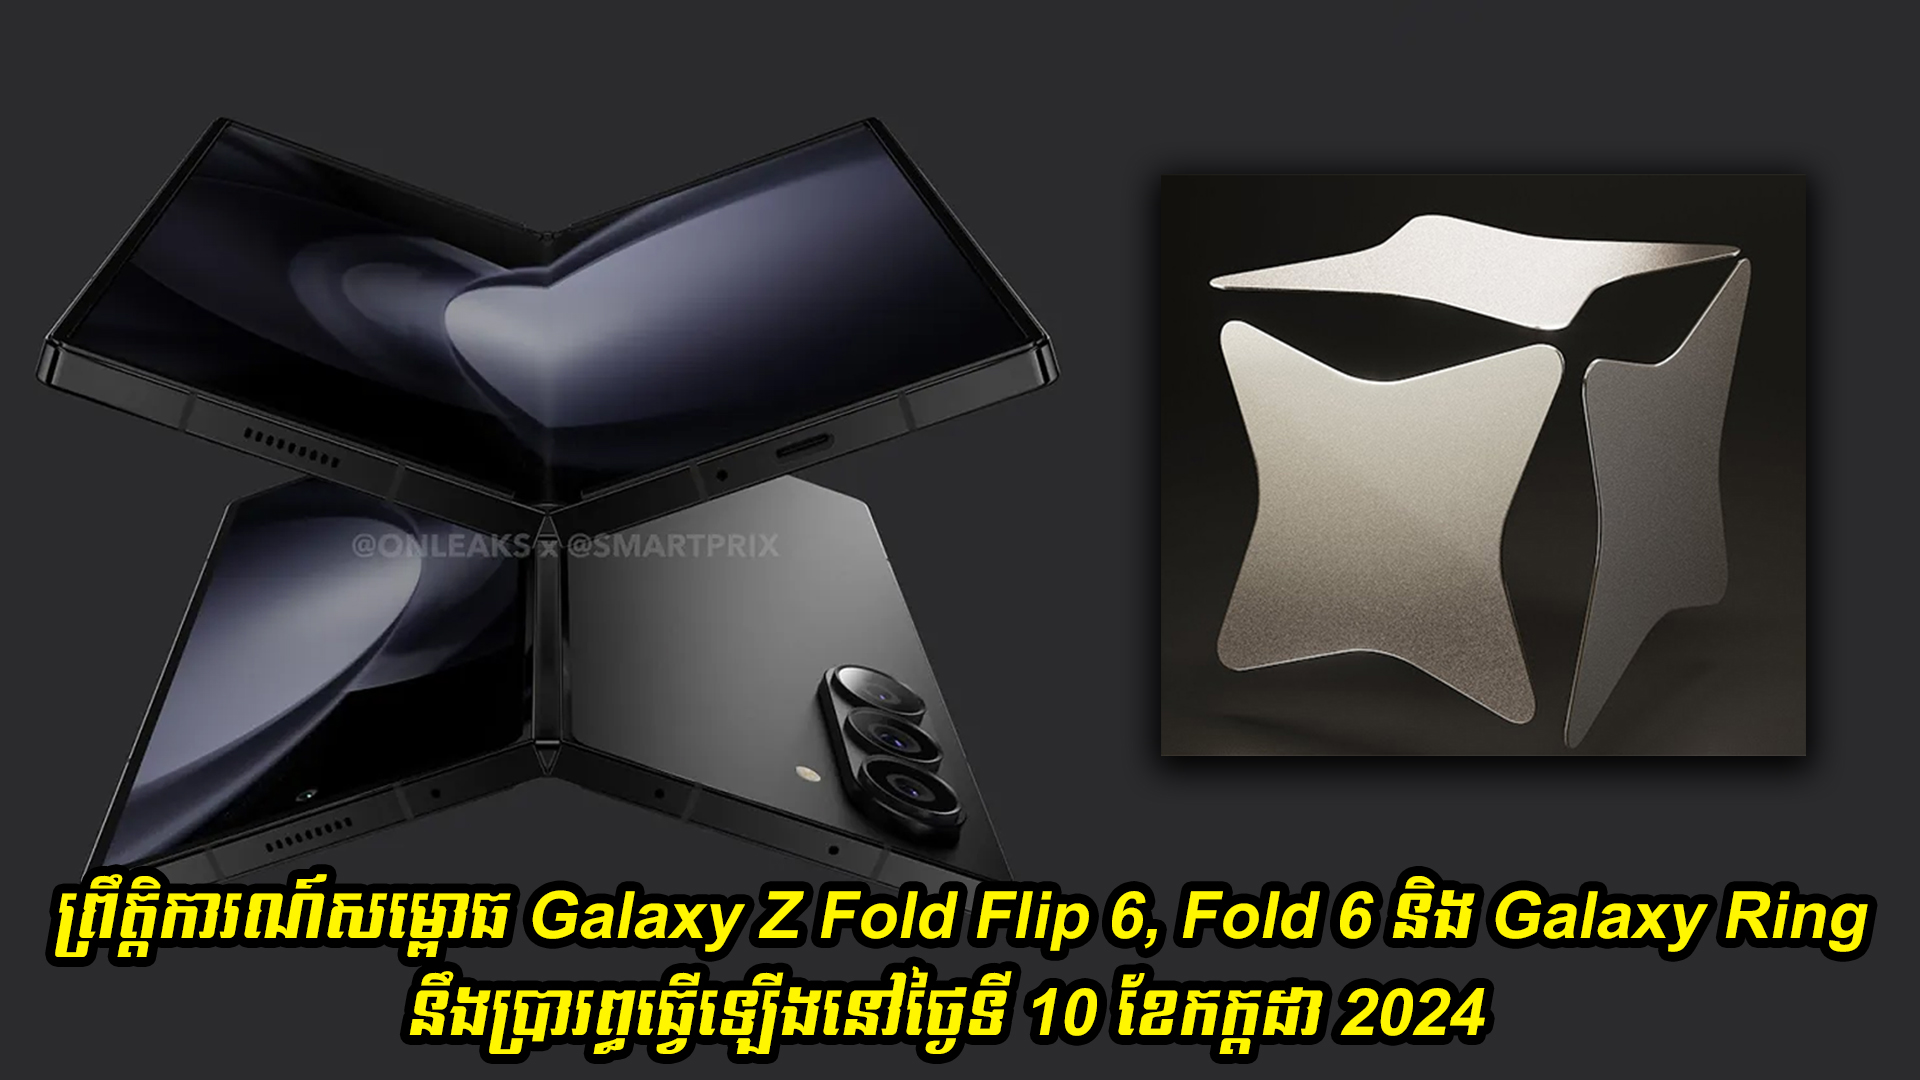 ព្រឹត្តិការណ៍សម្ពោធ Galaxy Z Fold Flip 6, Fold 6 និង Galaxy Ring នឹងប្រារព្ធធ្វើឡើងនៅថ្ងៃទី 10 ខែកក្កដា